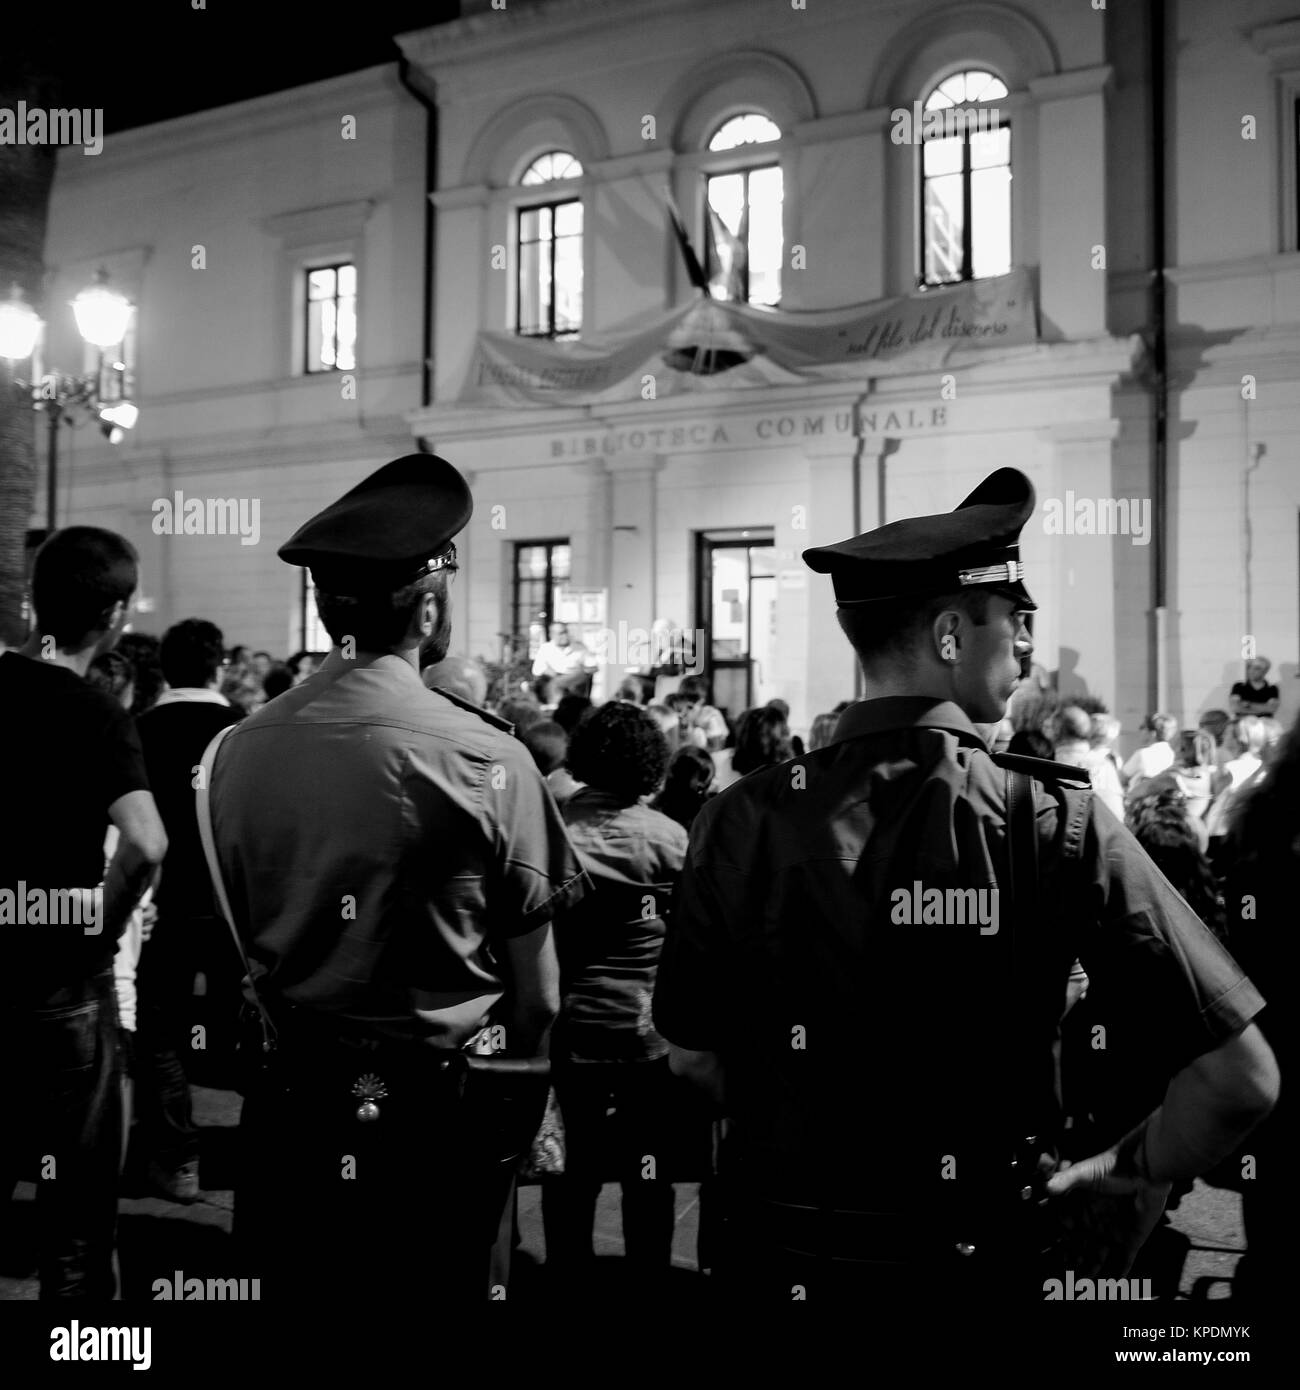 "Carabinieri', italiano gendarmery ufficiali, pattuglia di notte nel centro turistico di Olbia, Sardegna, Italia Foto Stock